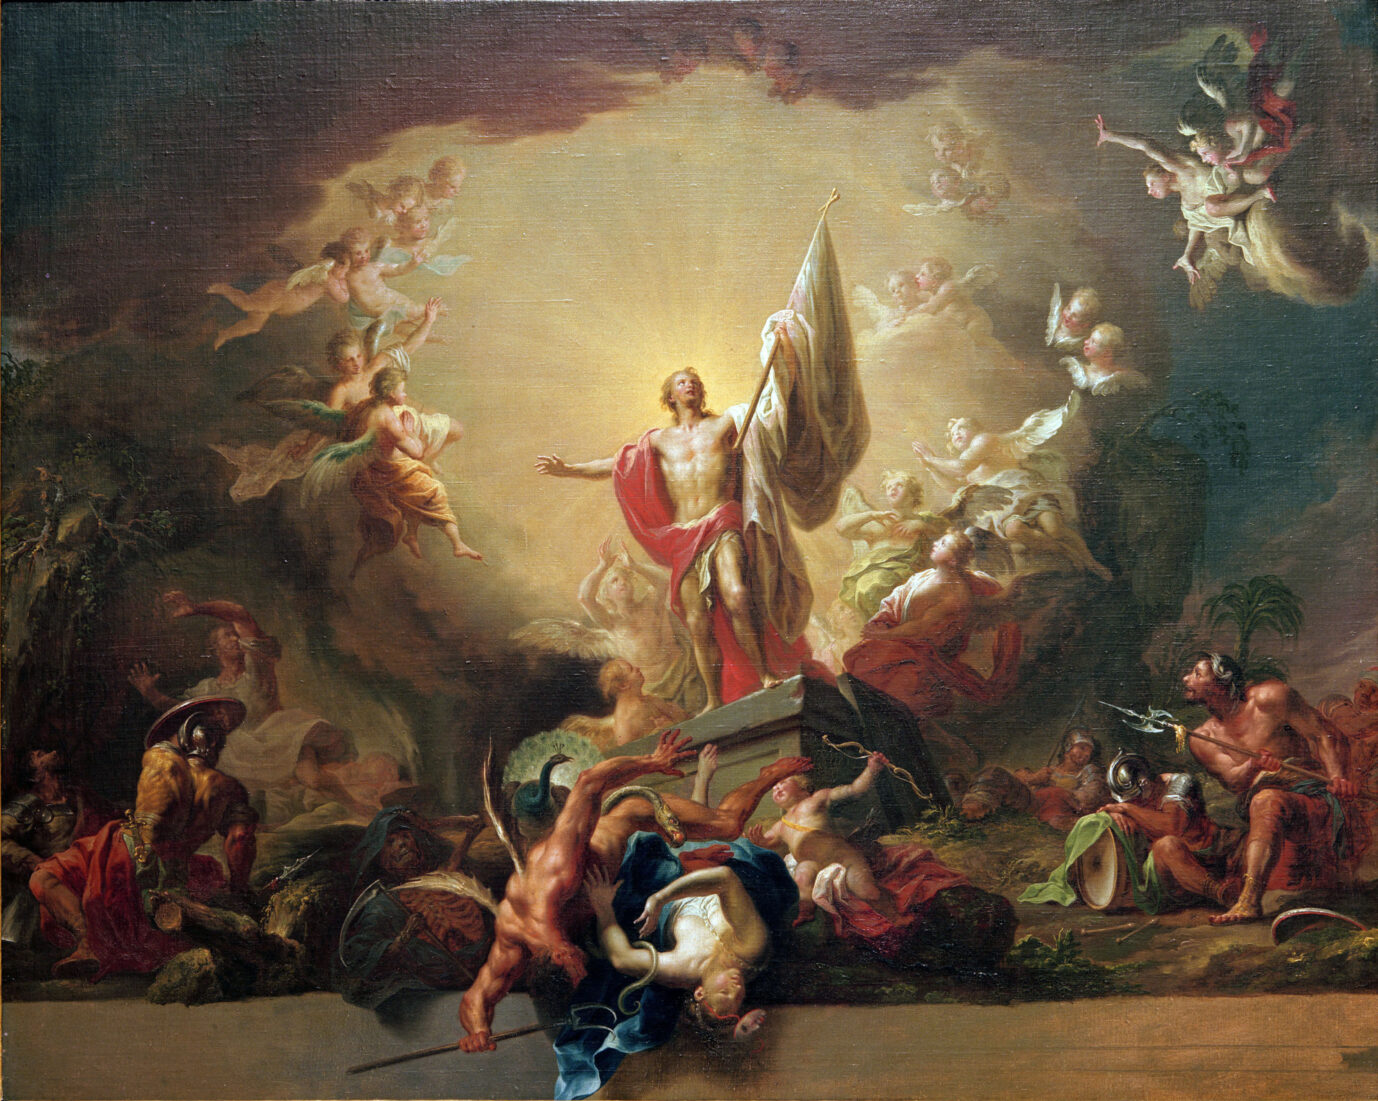 Ein Gemälde zeigt die Auferstehung Christi: Biblische Vorstellungen von Transformation stehen im Gegensatz zu denen der Grünen.